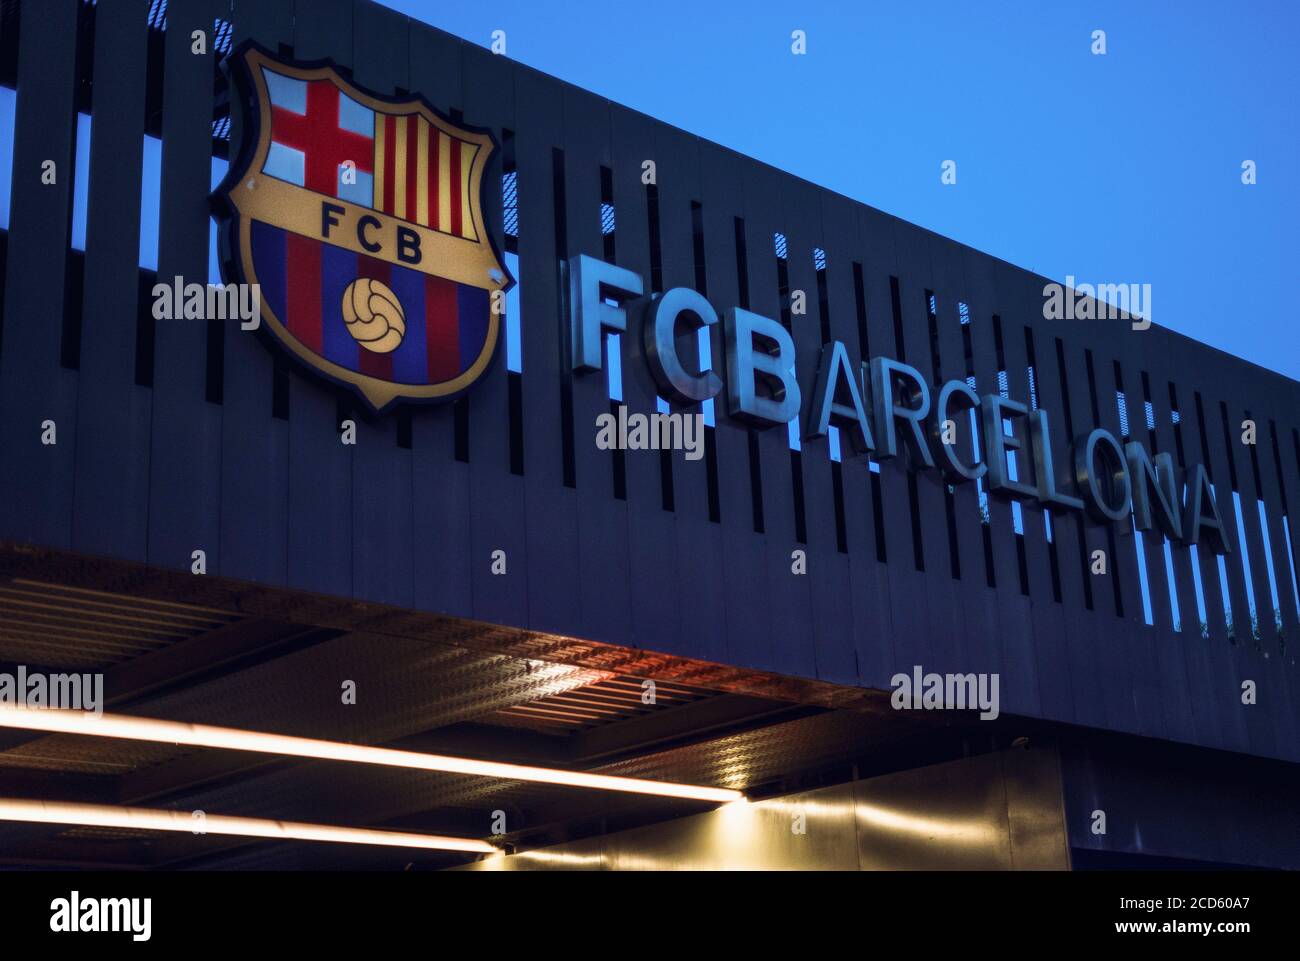 Barcelone, Espagne. 26 août 2020. Vue du logo du FC Barcelona au stade Camp  Nou après que le six footballeur du monde Messi ait annoncé qu'il voulait  quitter le club. « avec